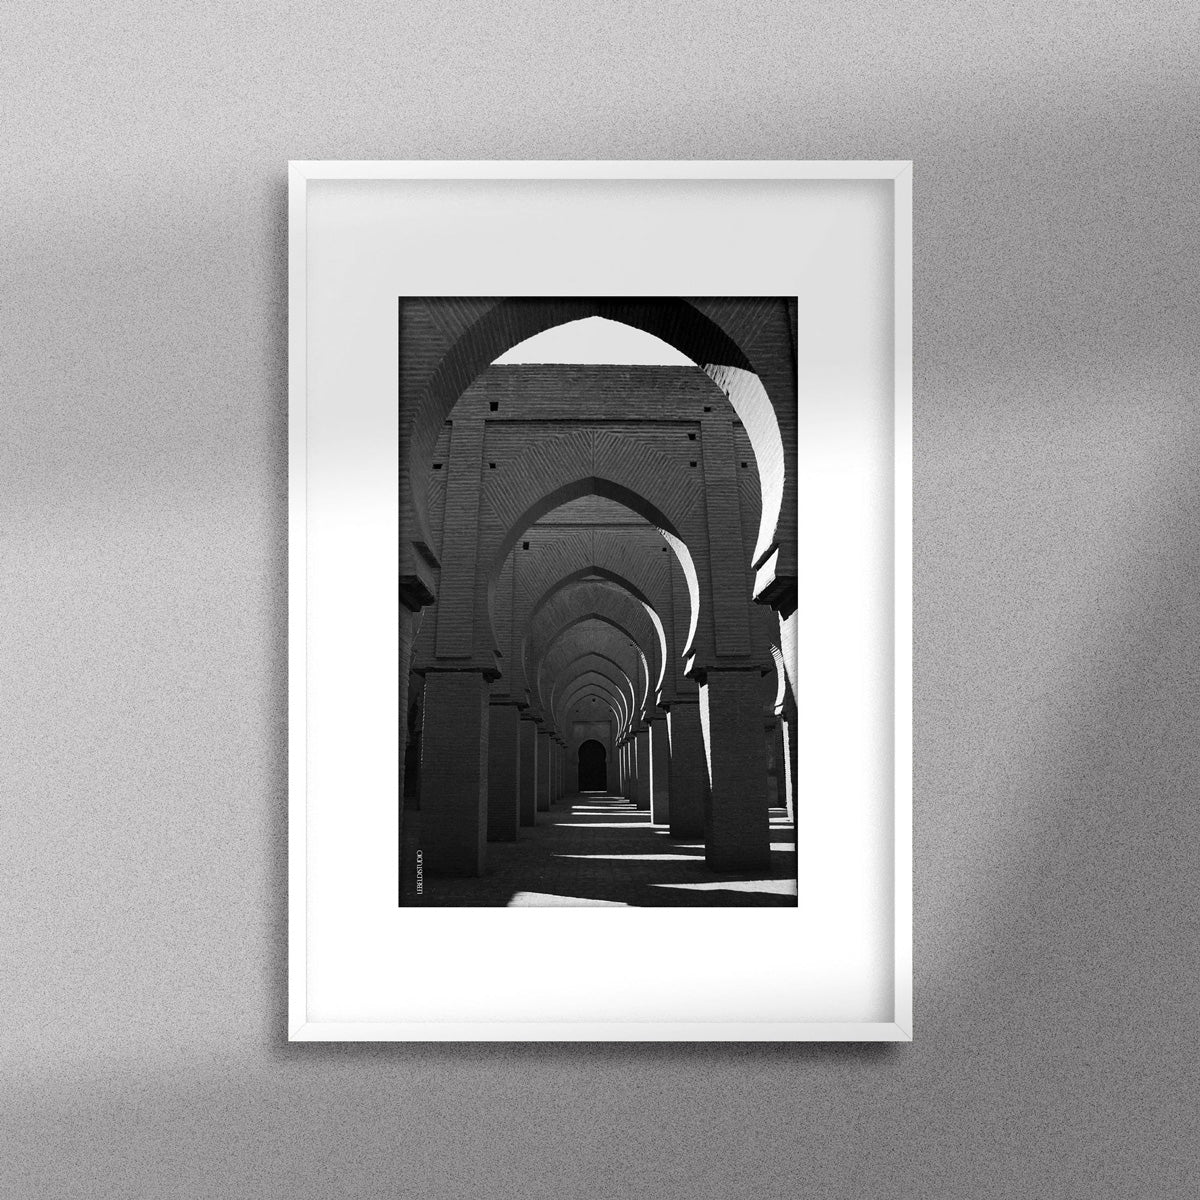 Tableau décoratif en noir et blanc de la Mosquée Tinmel, encadré dans un cadre blanc - Format A3.